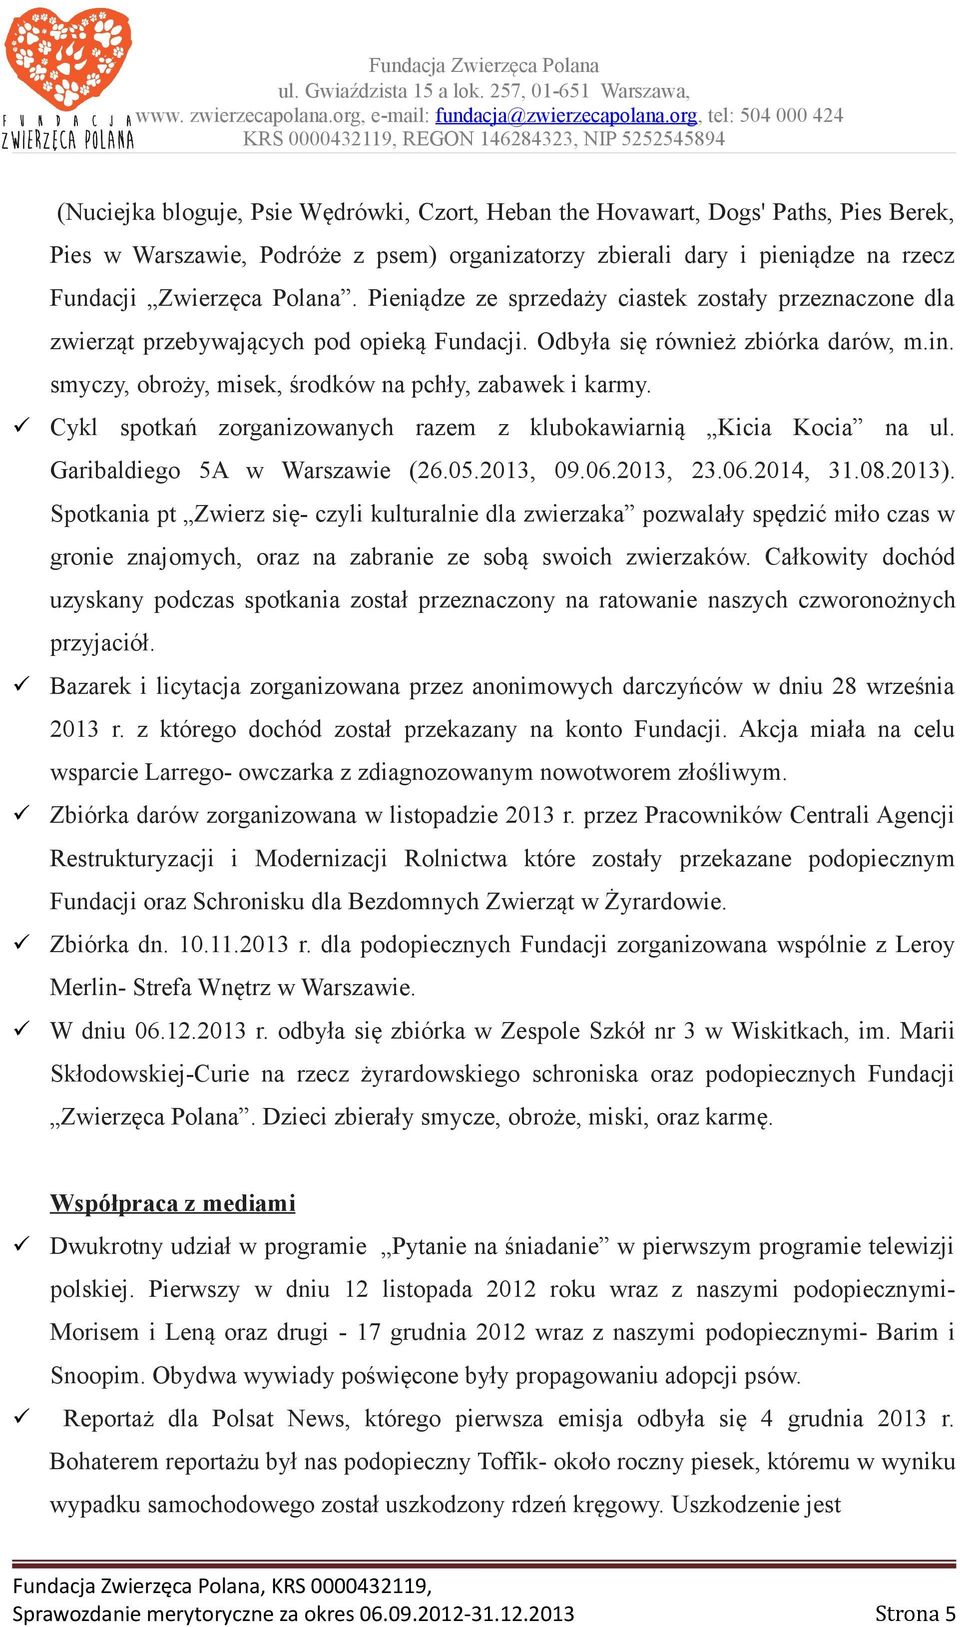 Cykl spotkań zorganizowanych razem z klubokawiarnią Kicia Kocia na ul. Garibaldiego 5A w Warszawie (26.05.2013, 09.06.2013, 23.06.2014, 31.08.2013).